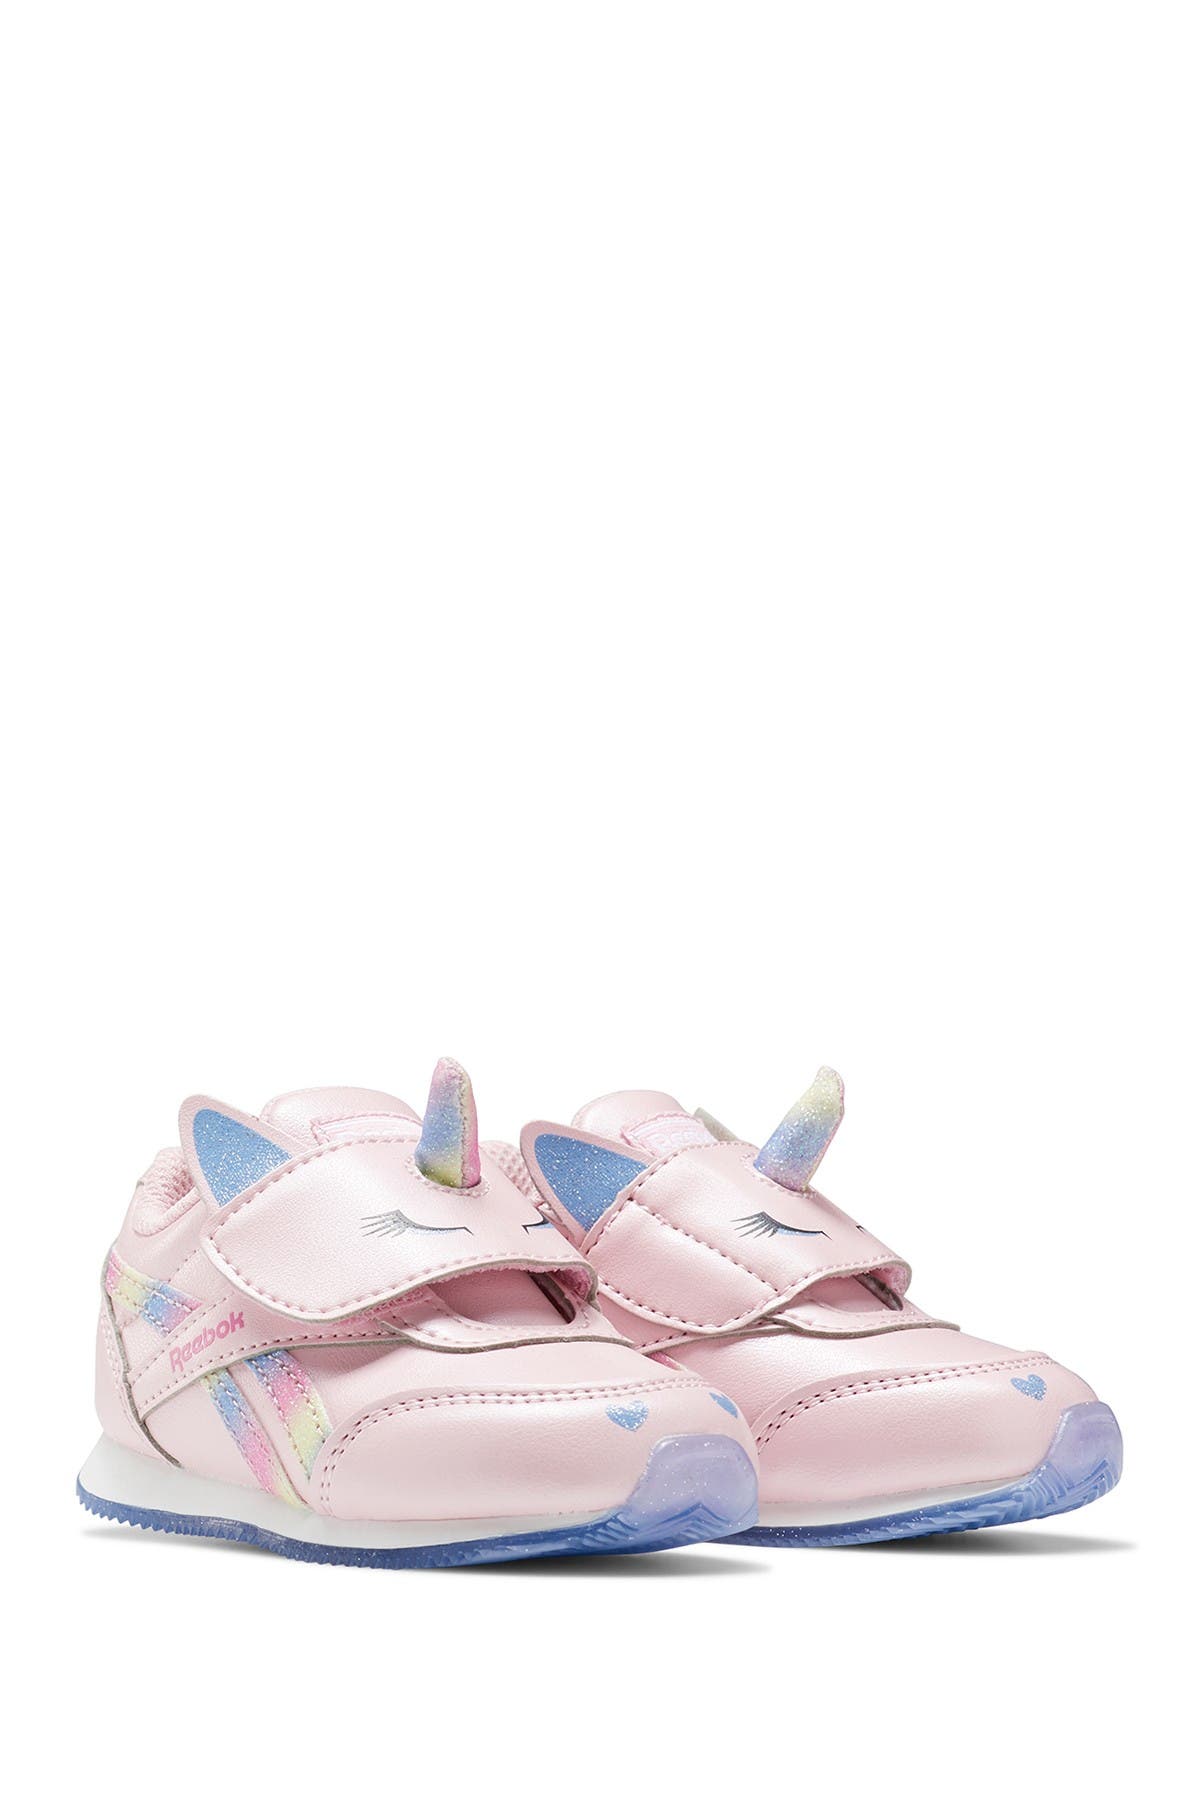 baby reebok sneakers